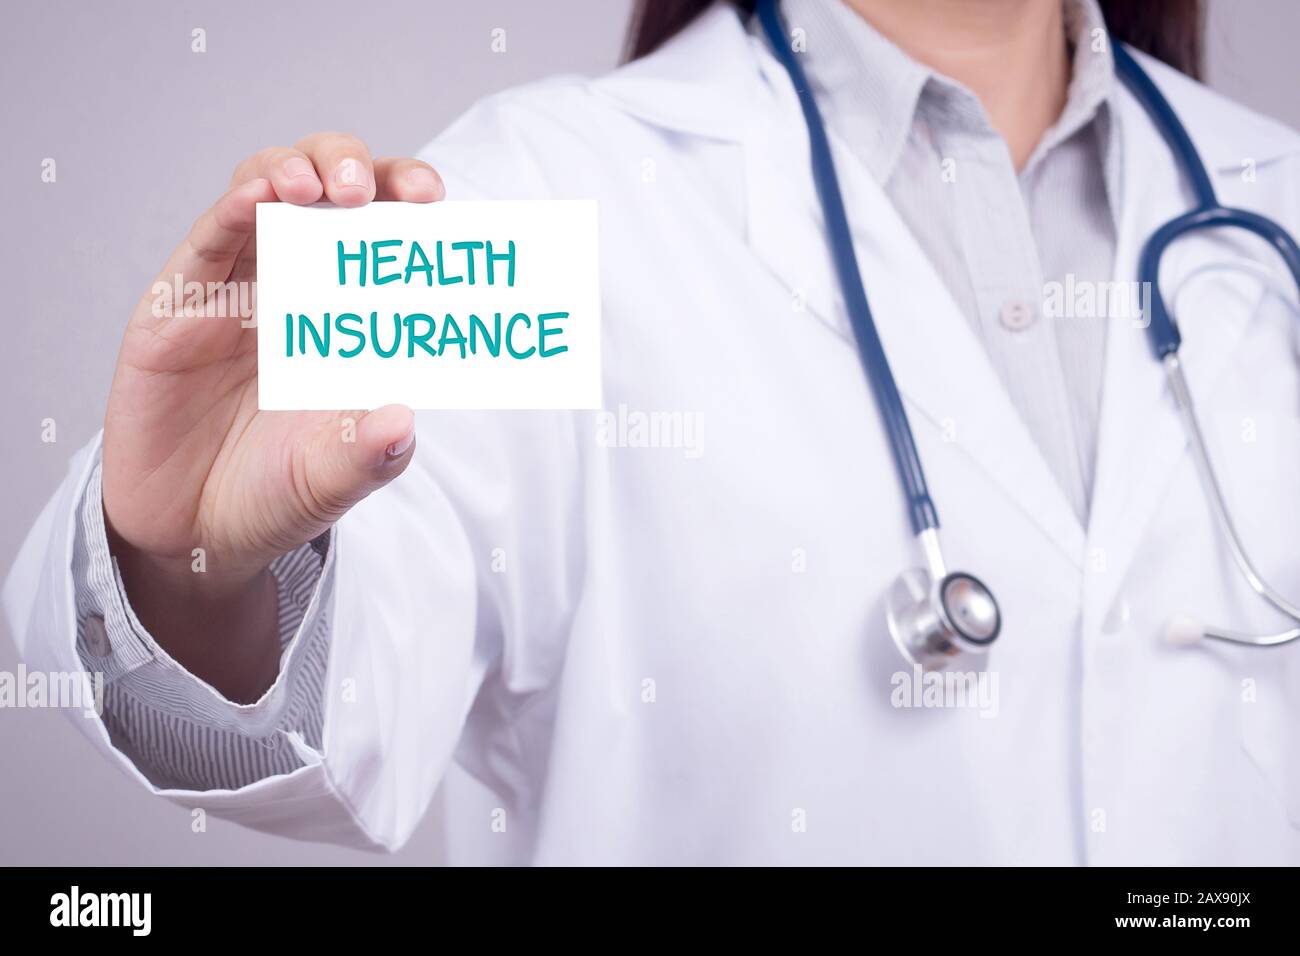 concepto de seguro de salud. médico en ropa médica con estetoscopio mostrando tarjeta para seguro de salud en la mano, rostro anónimo Foto de stock